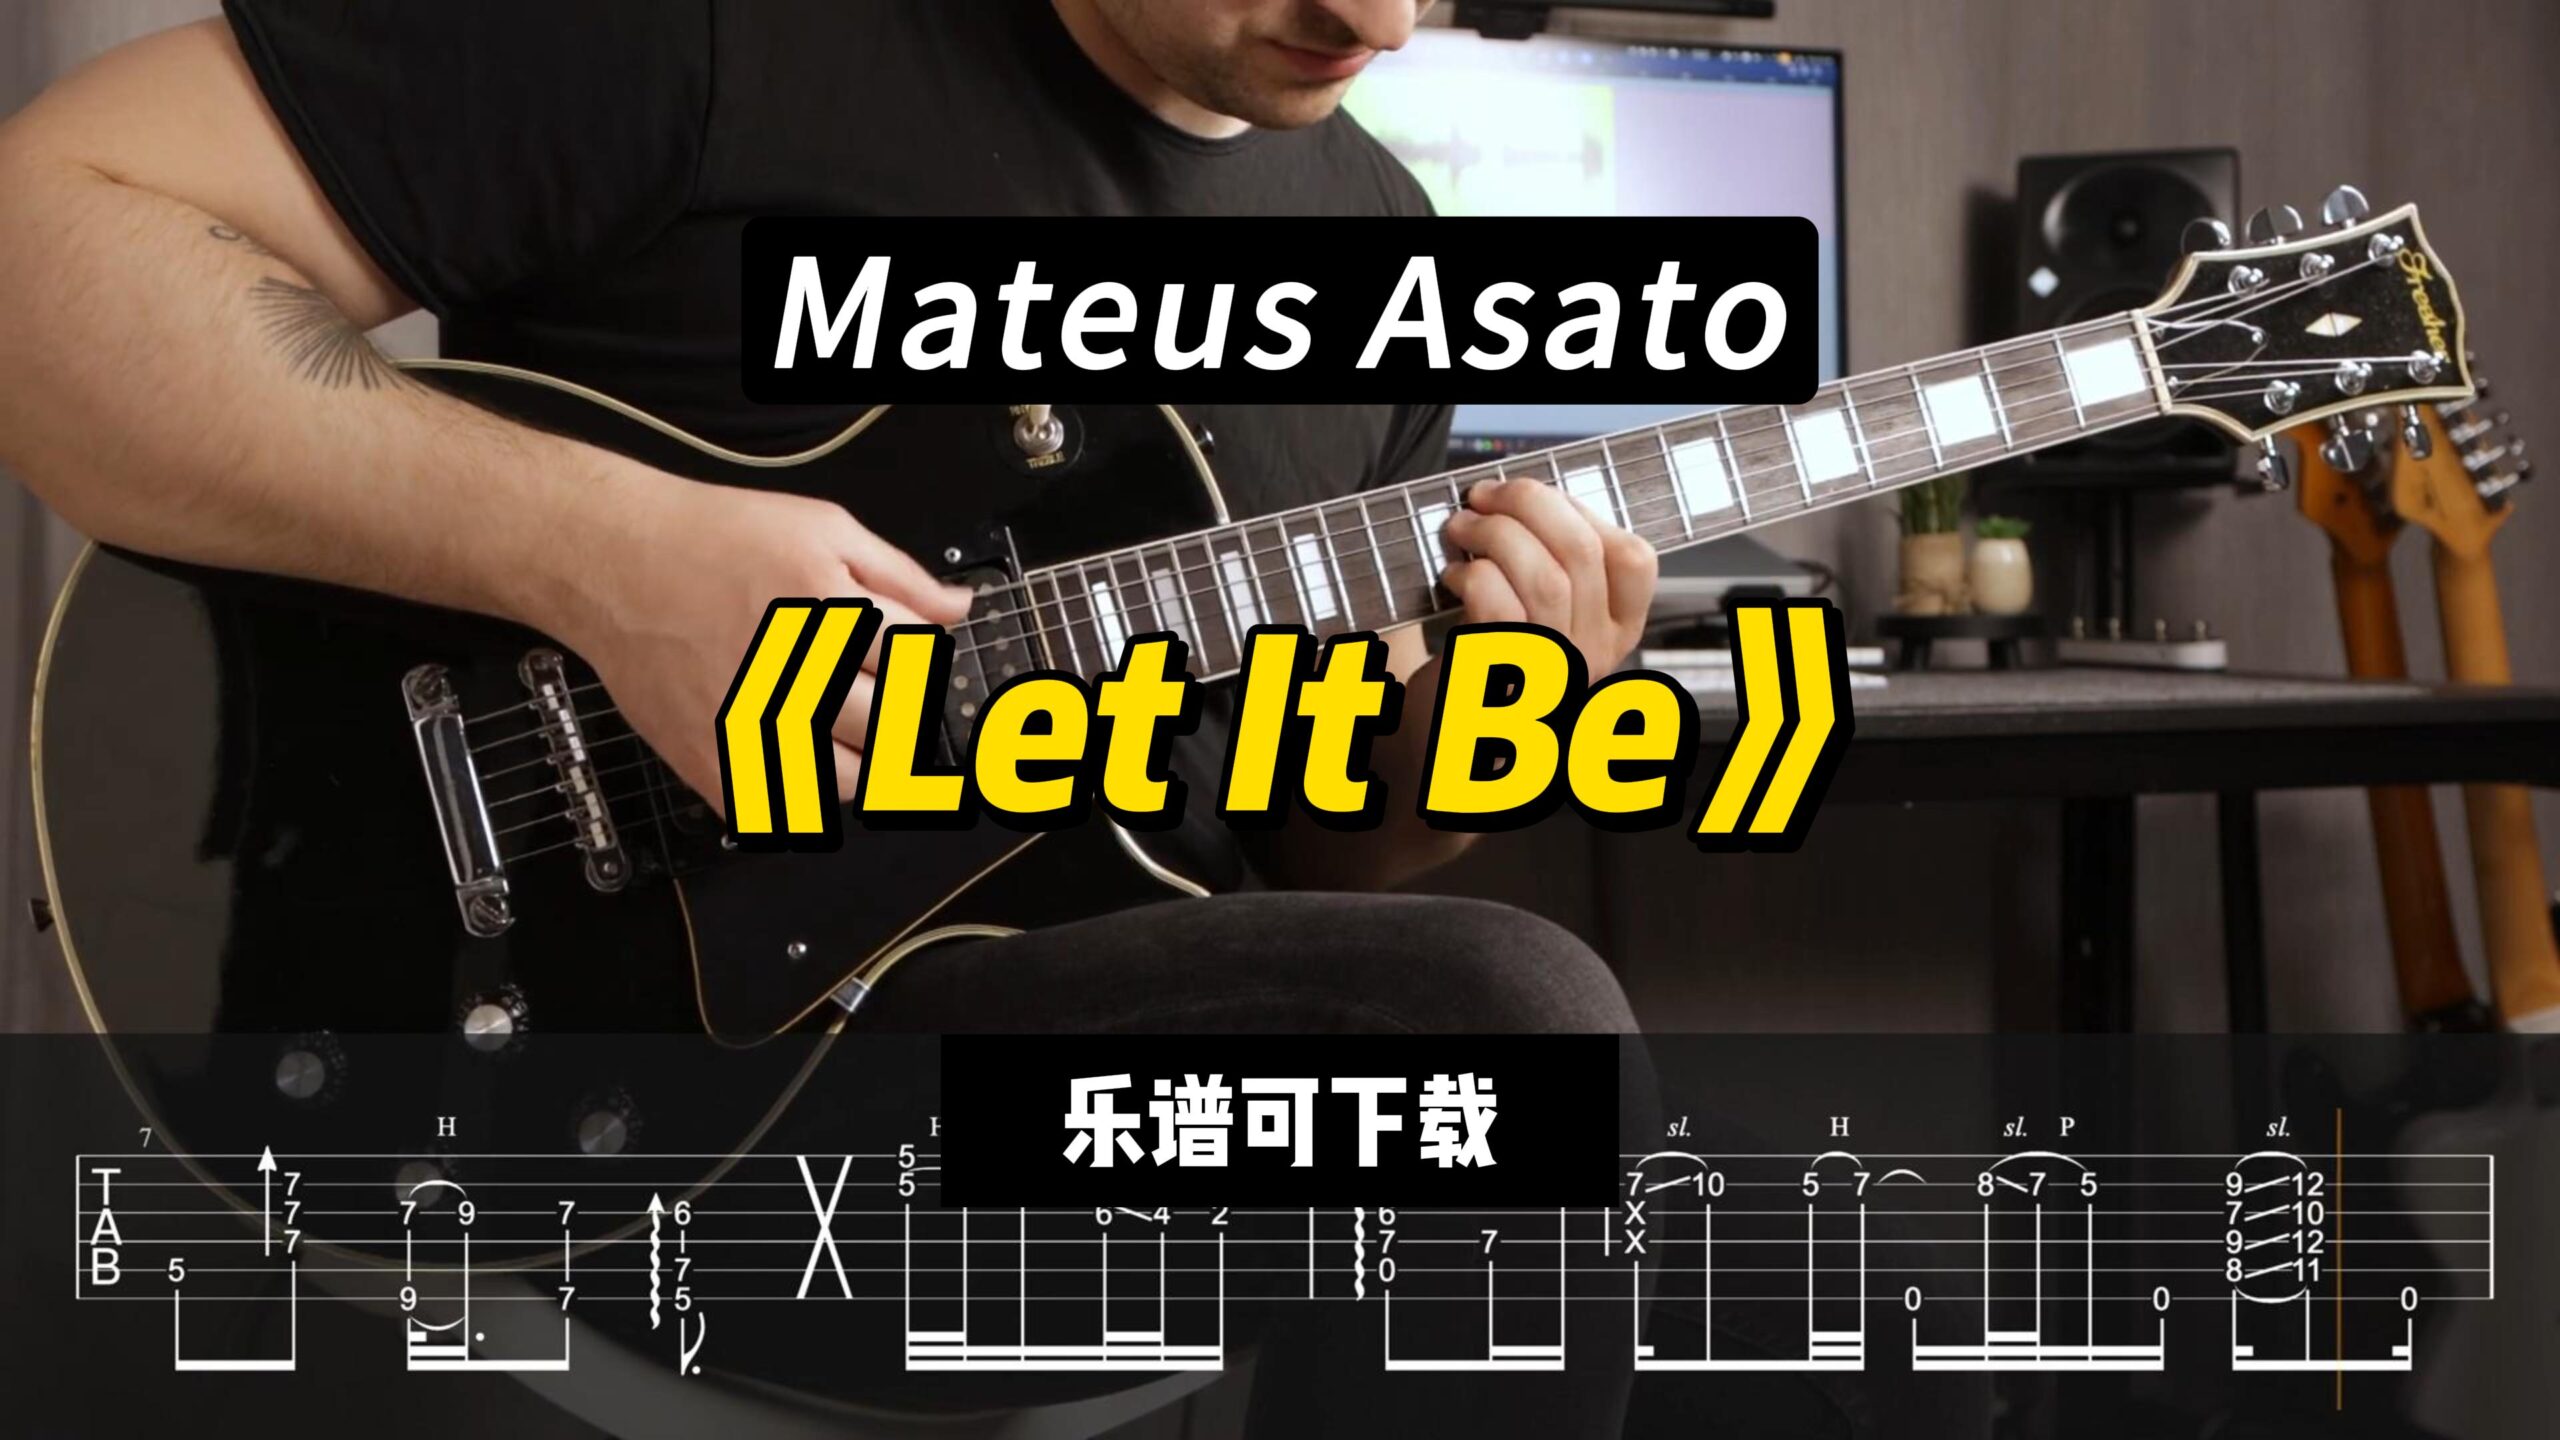 【乐谱可下载】《Let It Be》Mateus Asato-古桐博客